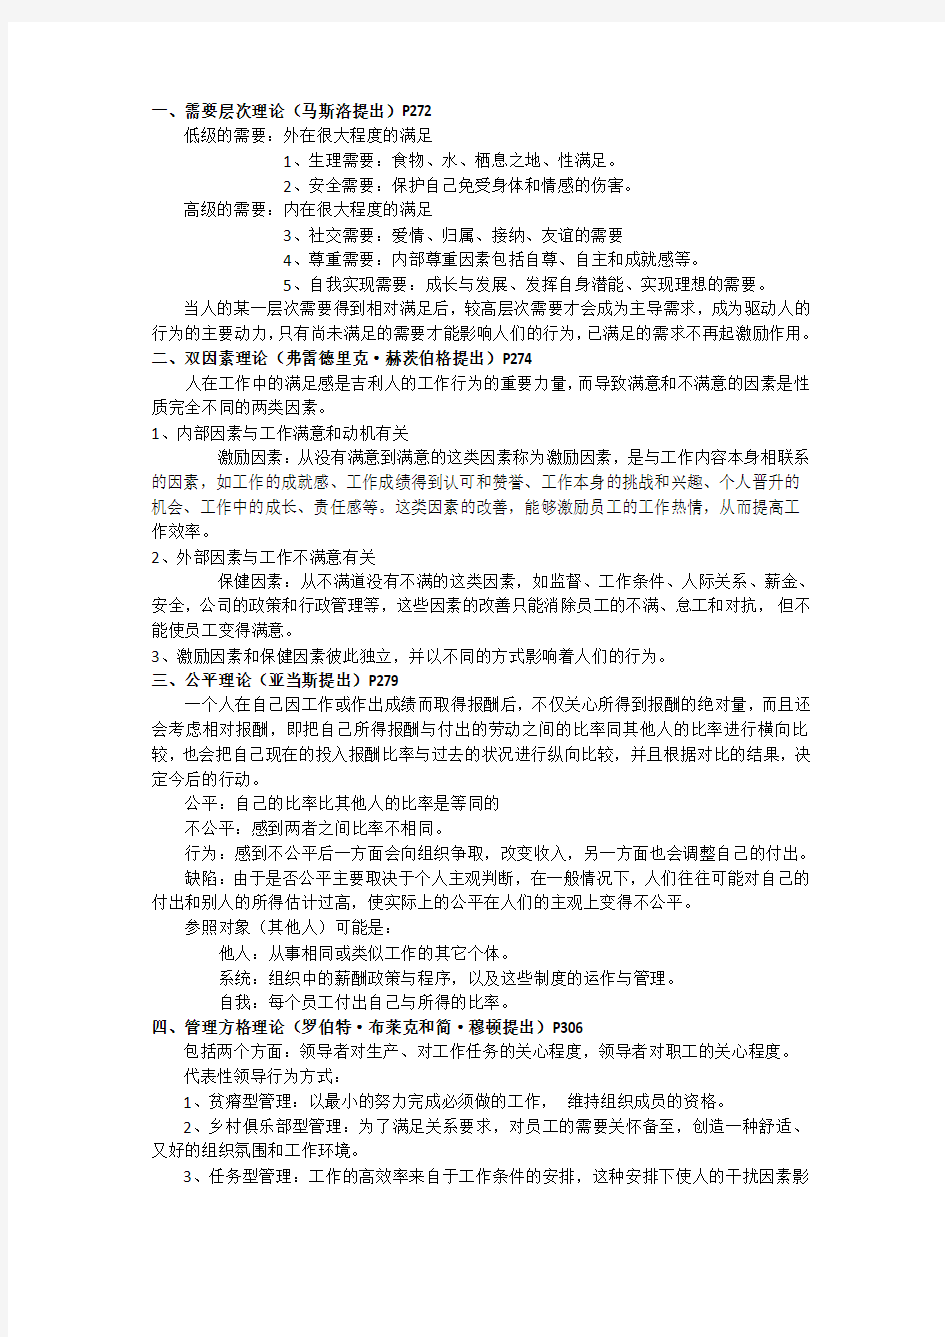 完整word版,北京林业大学2011~2012年管理学基础(非管理专业)重点整理